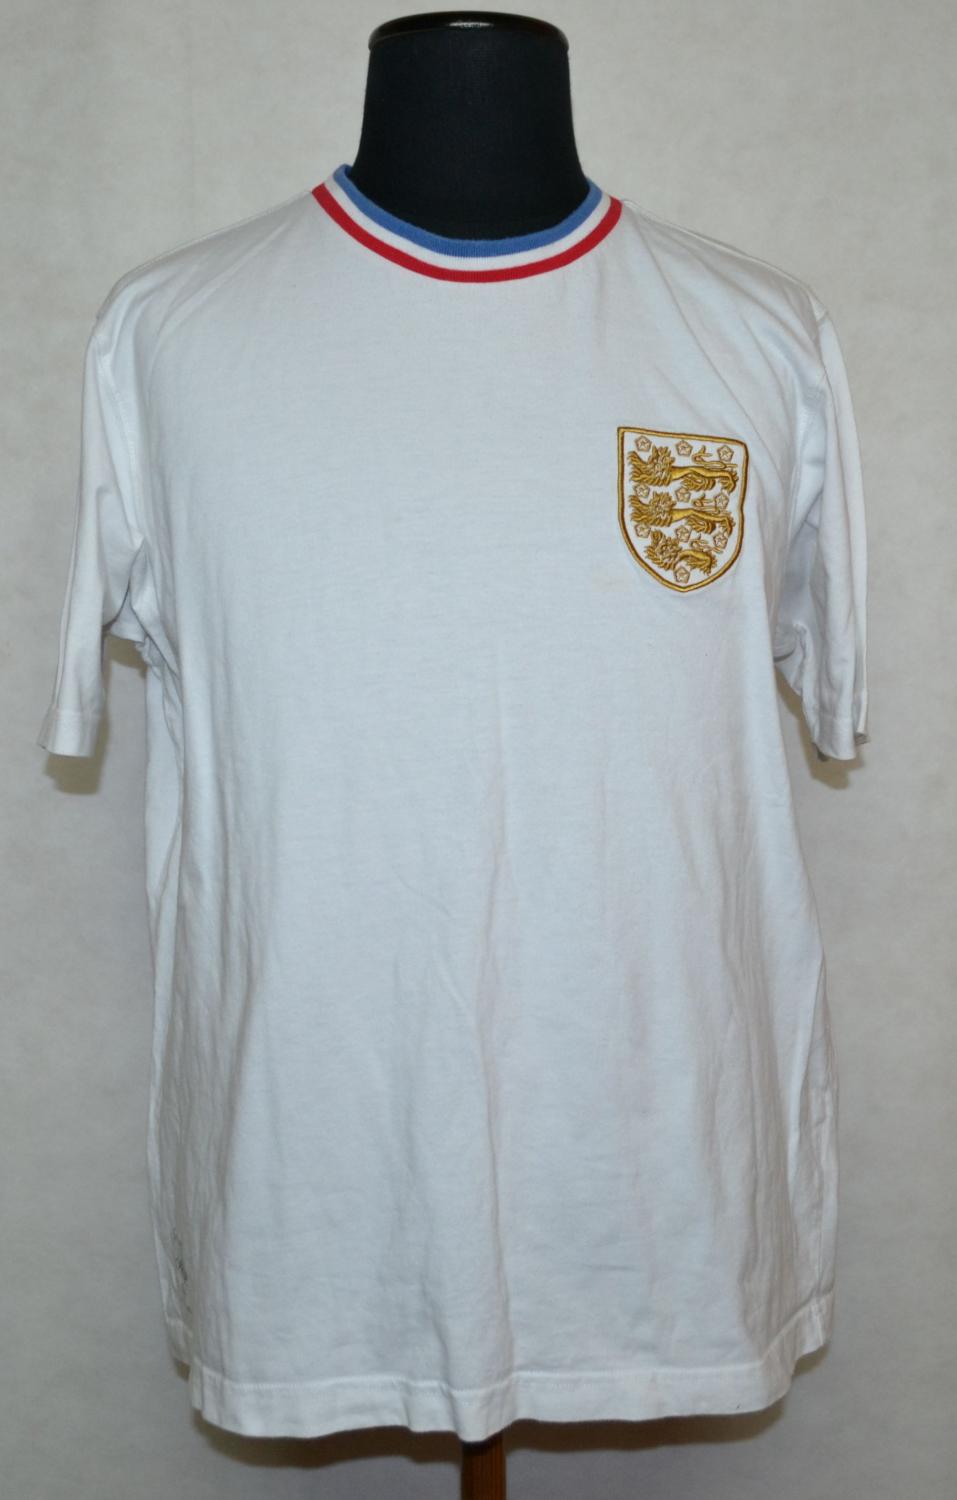 England Retro Replicas football shirt 1966. Added on 2014-12-13, 21:16